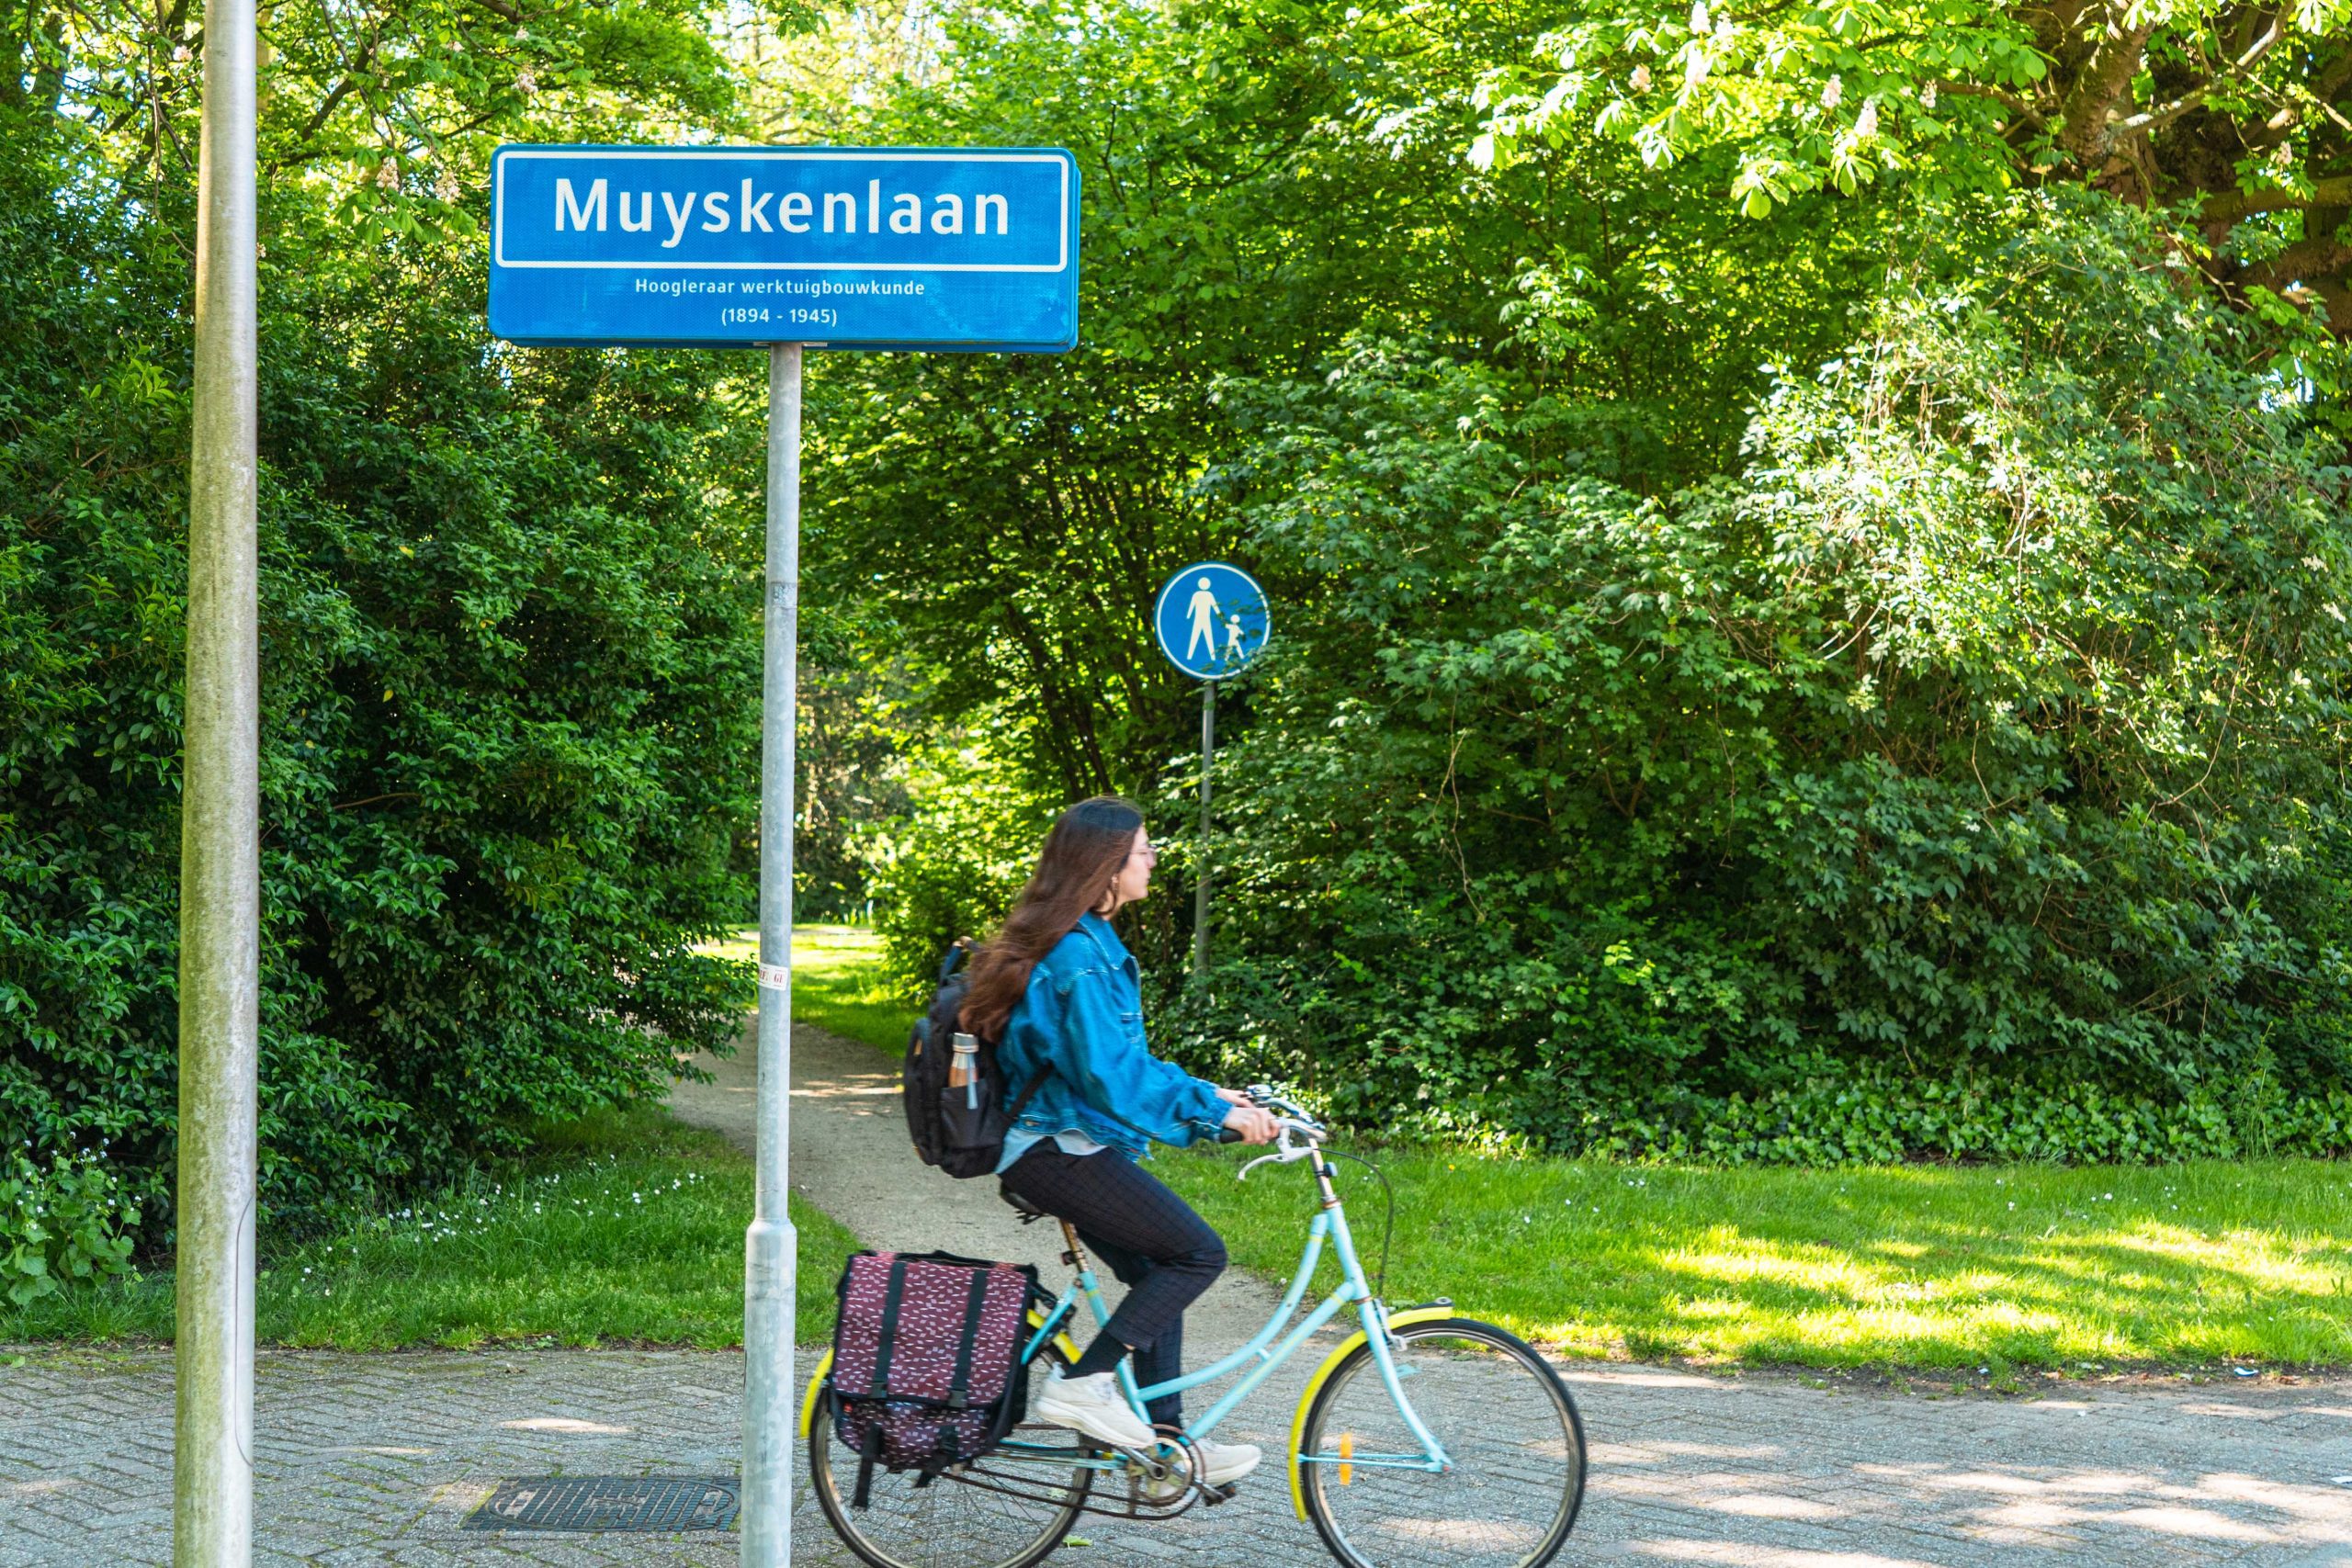 Iemand fietst langs een straatnaambordje van de Muyskenlaan.